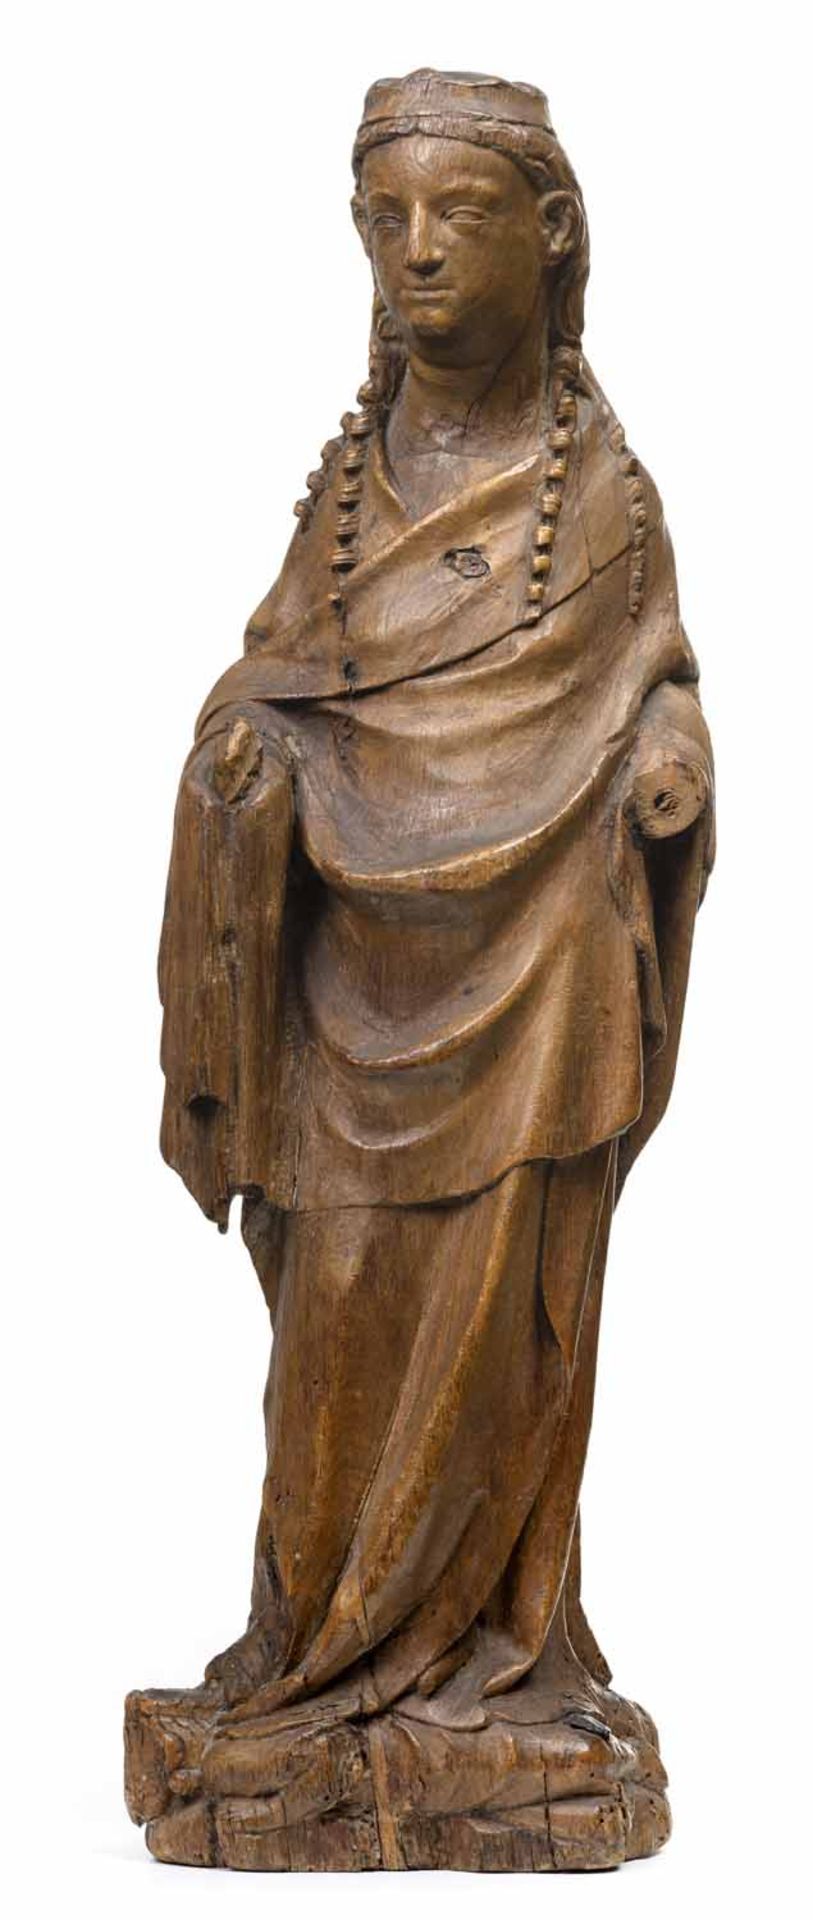 Heilige KatharinaRheinisch, 14. JahrhundertH. 53 cmStehende Heilige, den Kopf leicht nach rechts